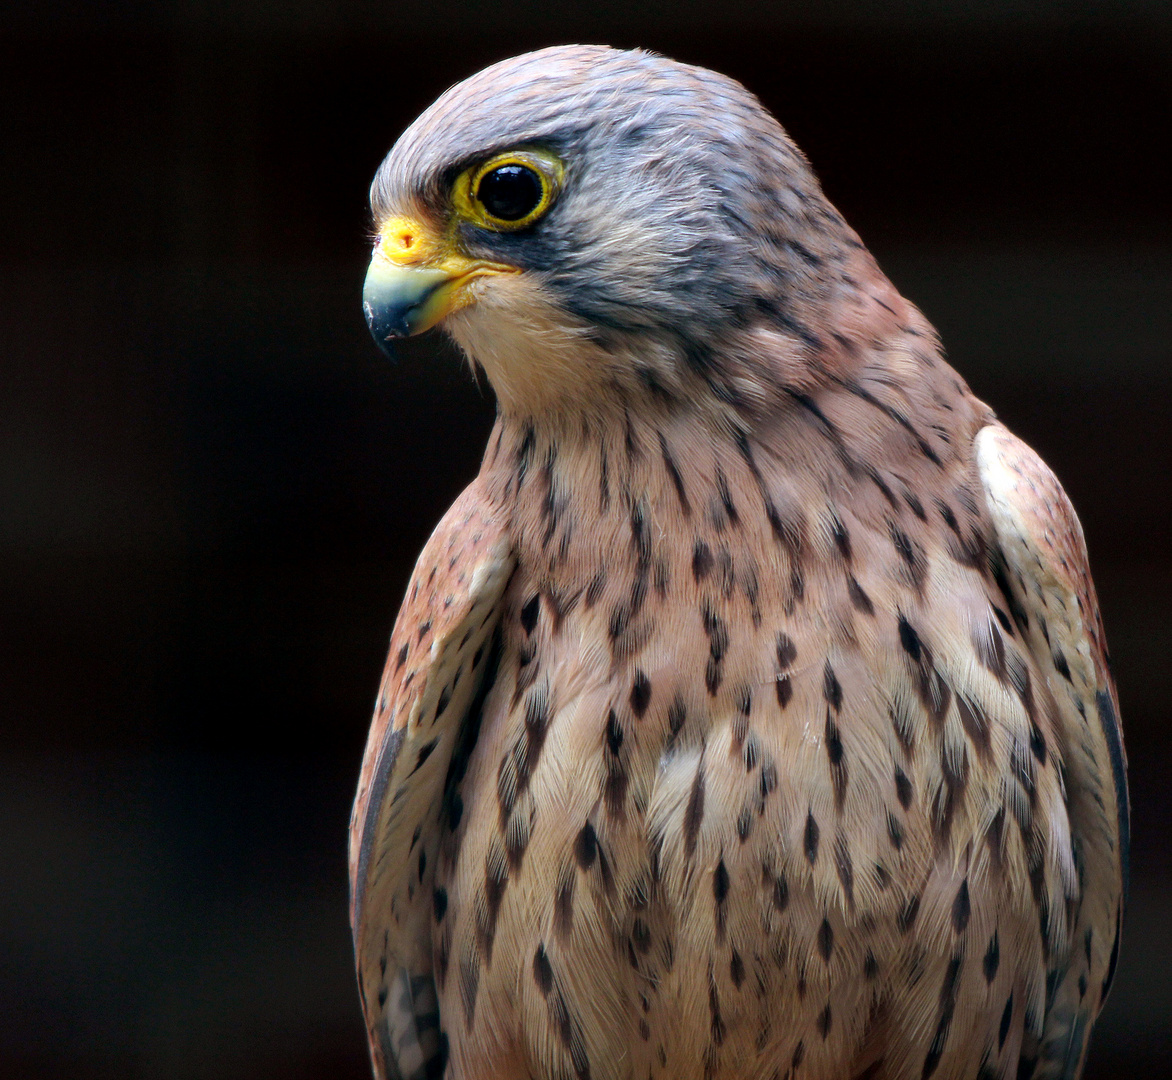 Portät eines Rötelfalken (Falco naumanni)